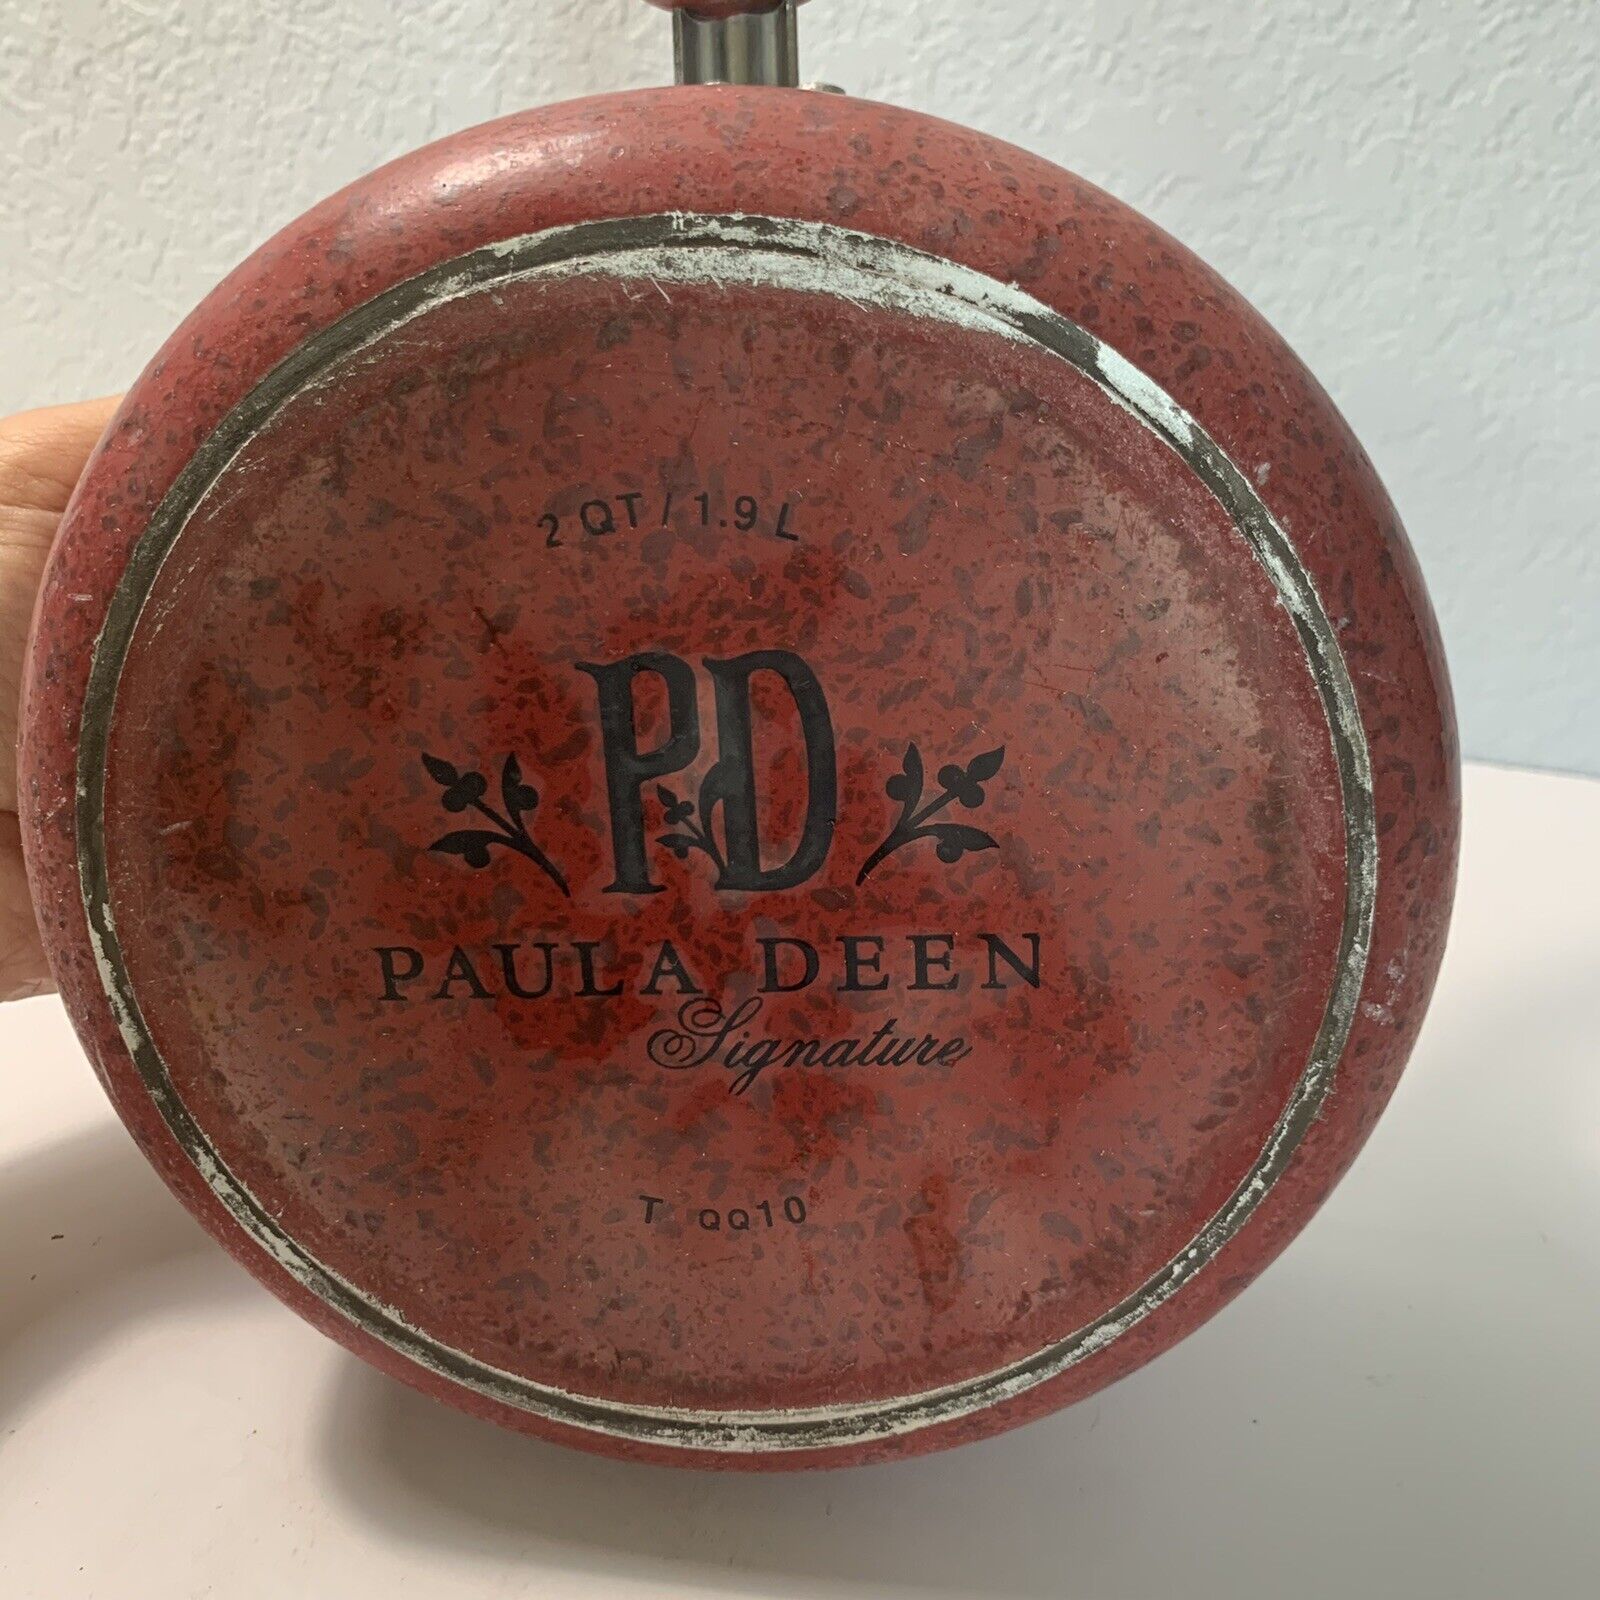 Paula Deen 16991 Riverbend Nonstick Cookware Pots and Pans Set, 12 Piece,  Red Speckle - Goshmart